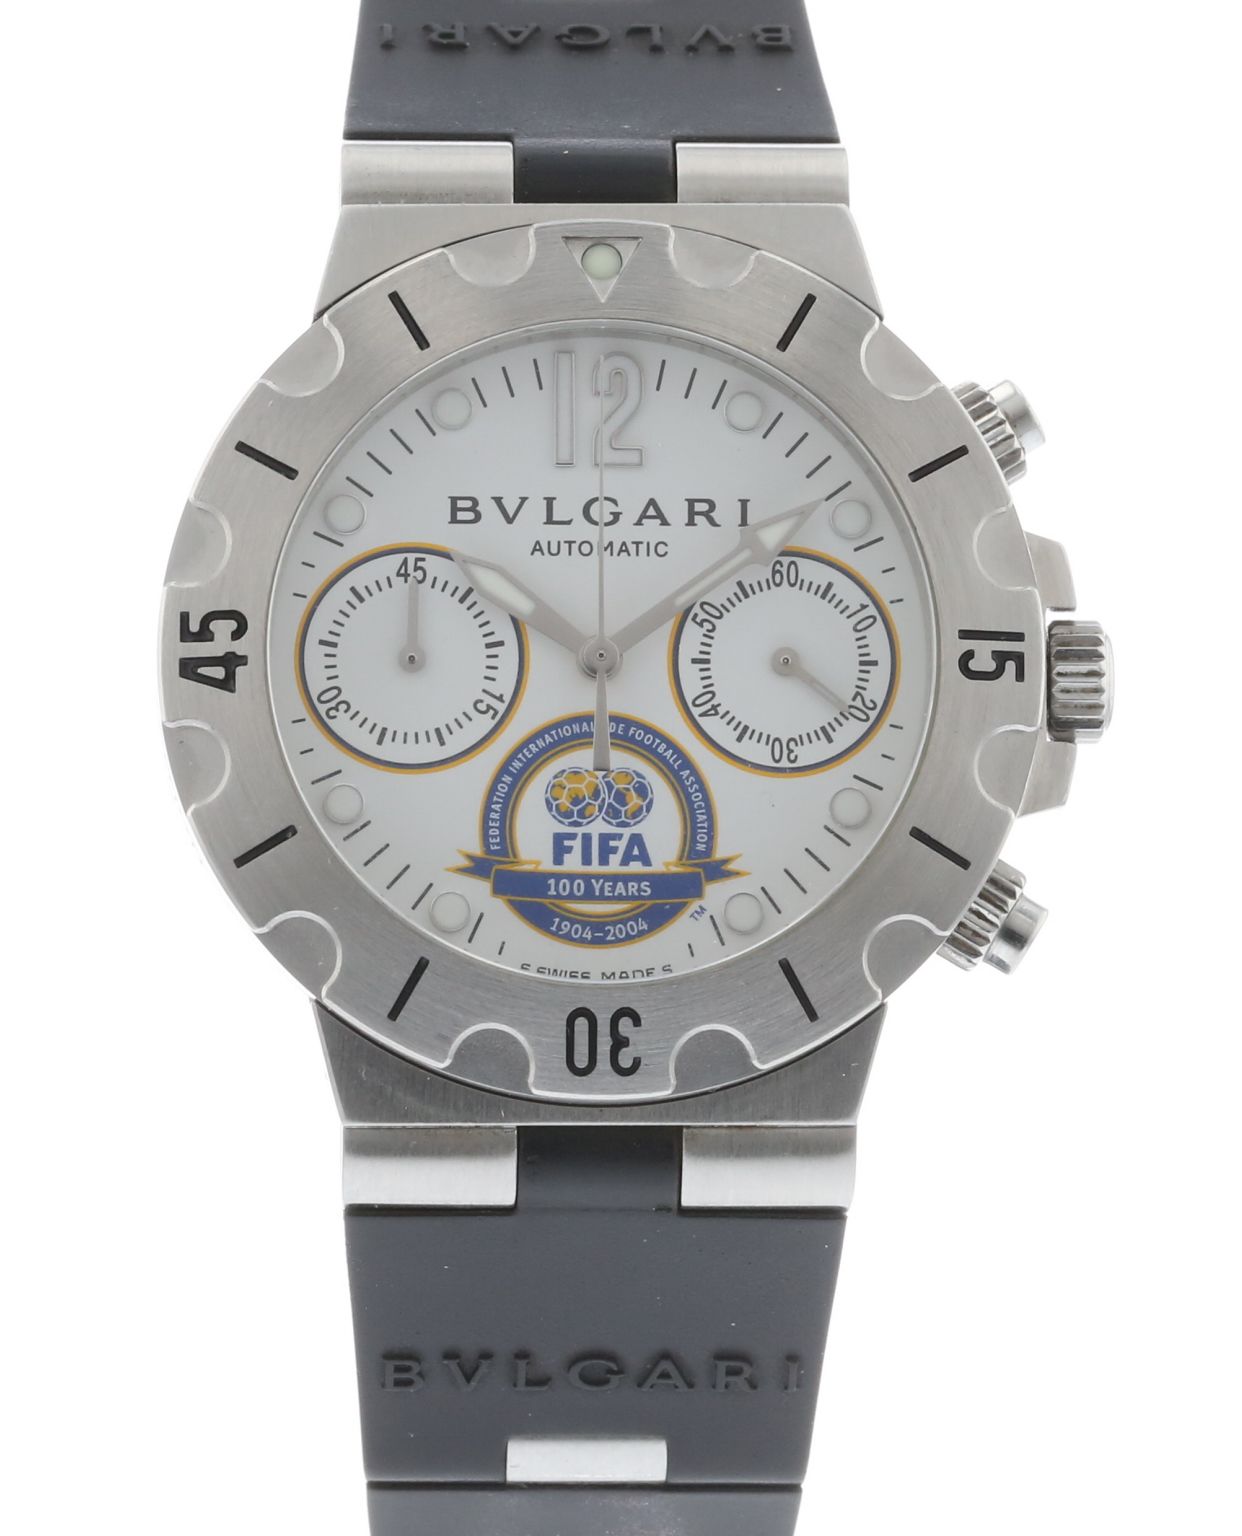 Authentic Used Bulgari Diagono Scuba FIFA Limited Edition SCB38S Watch (10-10-BVL-6CB302)